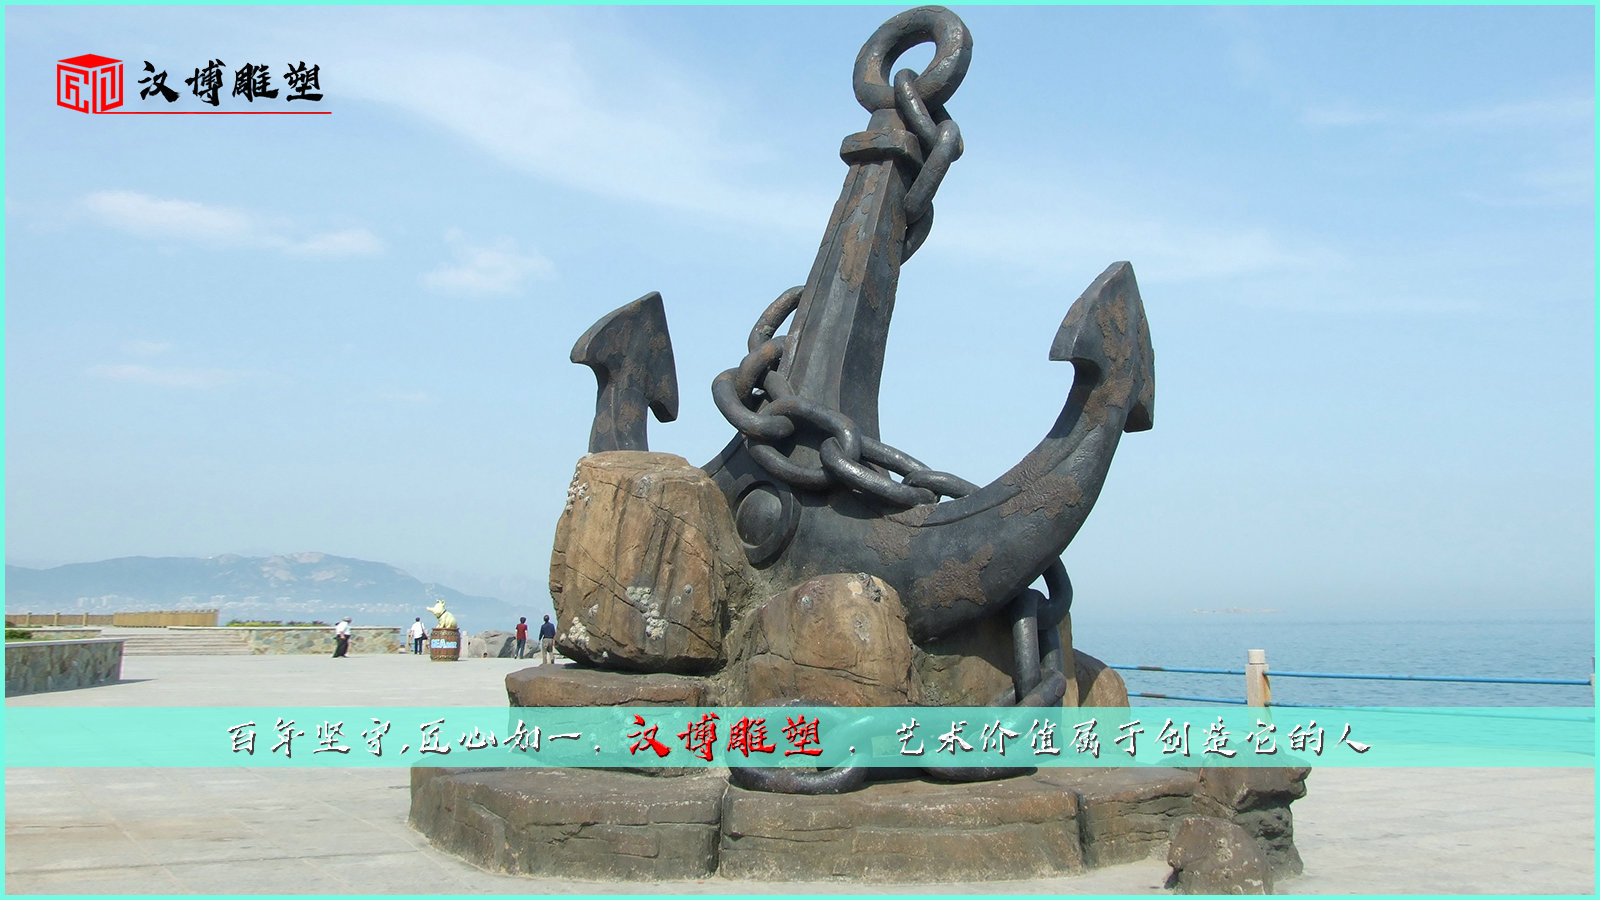 码头文化雕塑,欣赏可贵的码头文化